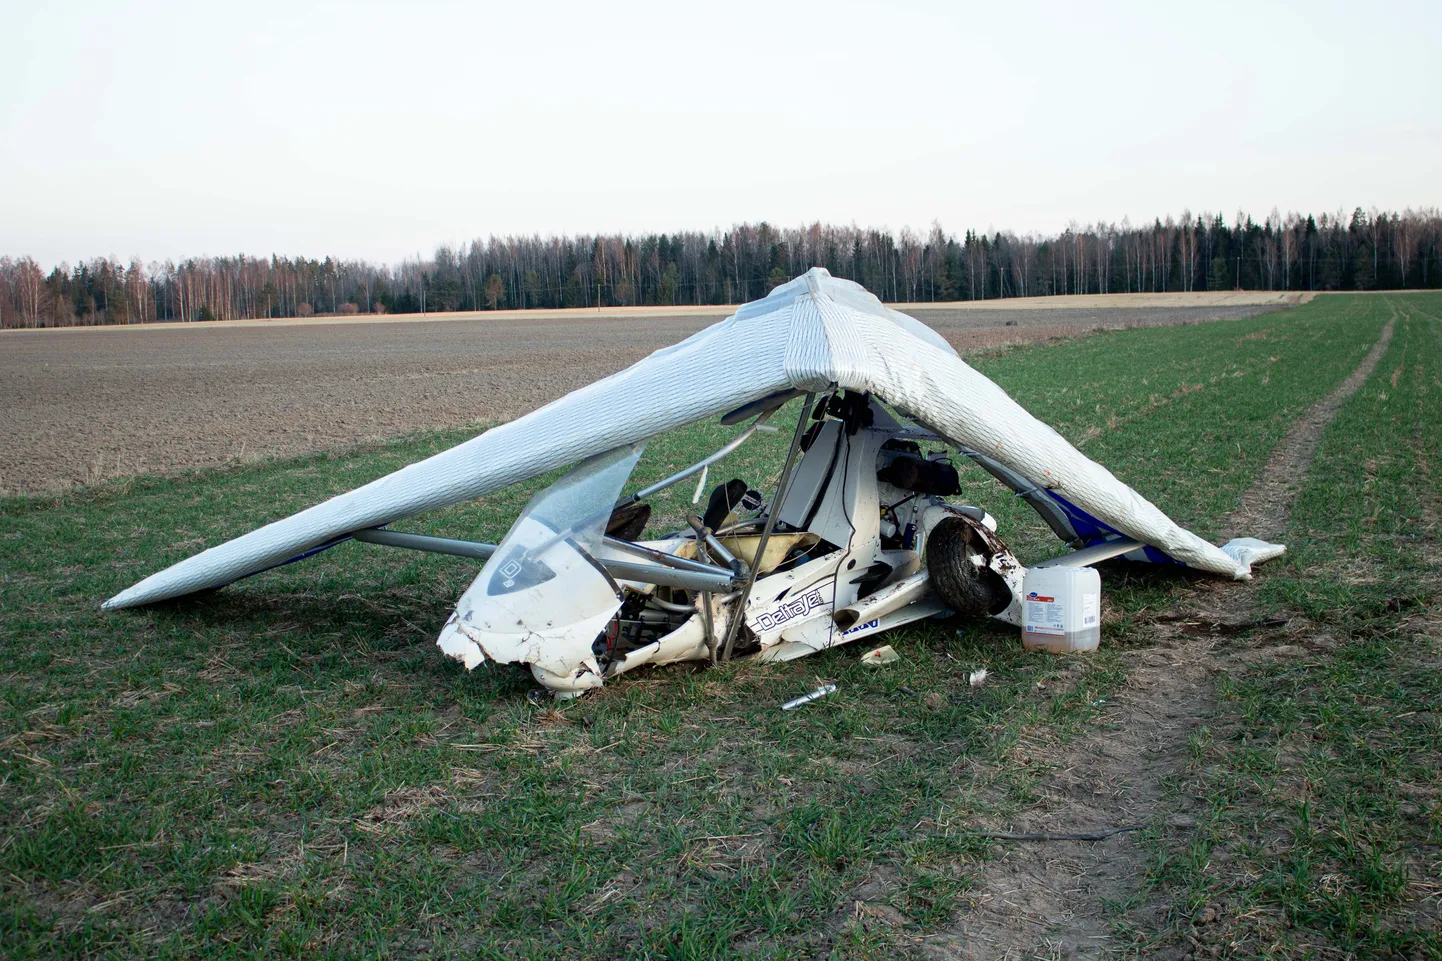 Pildil olev deltaplaan ei ole õnnetusega seotud. Pilt on tehtud tänavu aprillis Valgamaal Riidaja külas, kus juhtus samuti deltaplaaniga lennuõnnetus. Ka selles õnnetuses jäi piloot ellu.